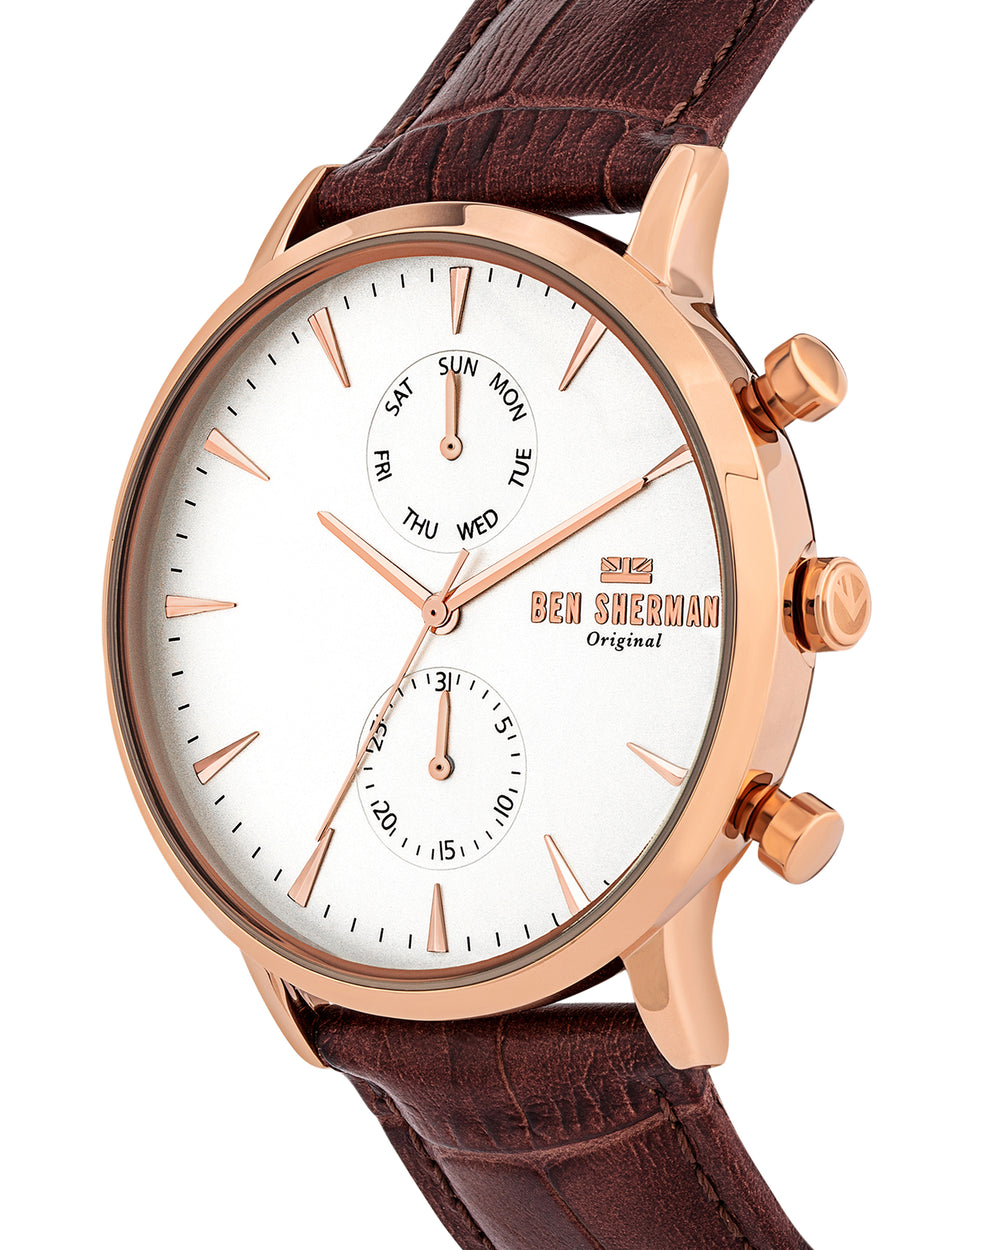 Men's Portobello Professional Multi Watch - Brown/Off-White/Rose Gold